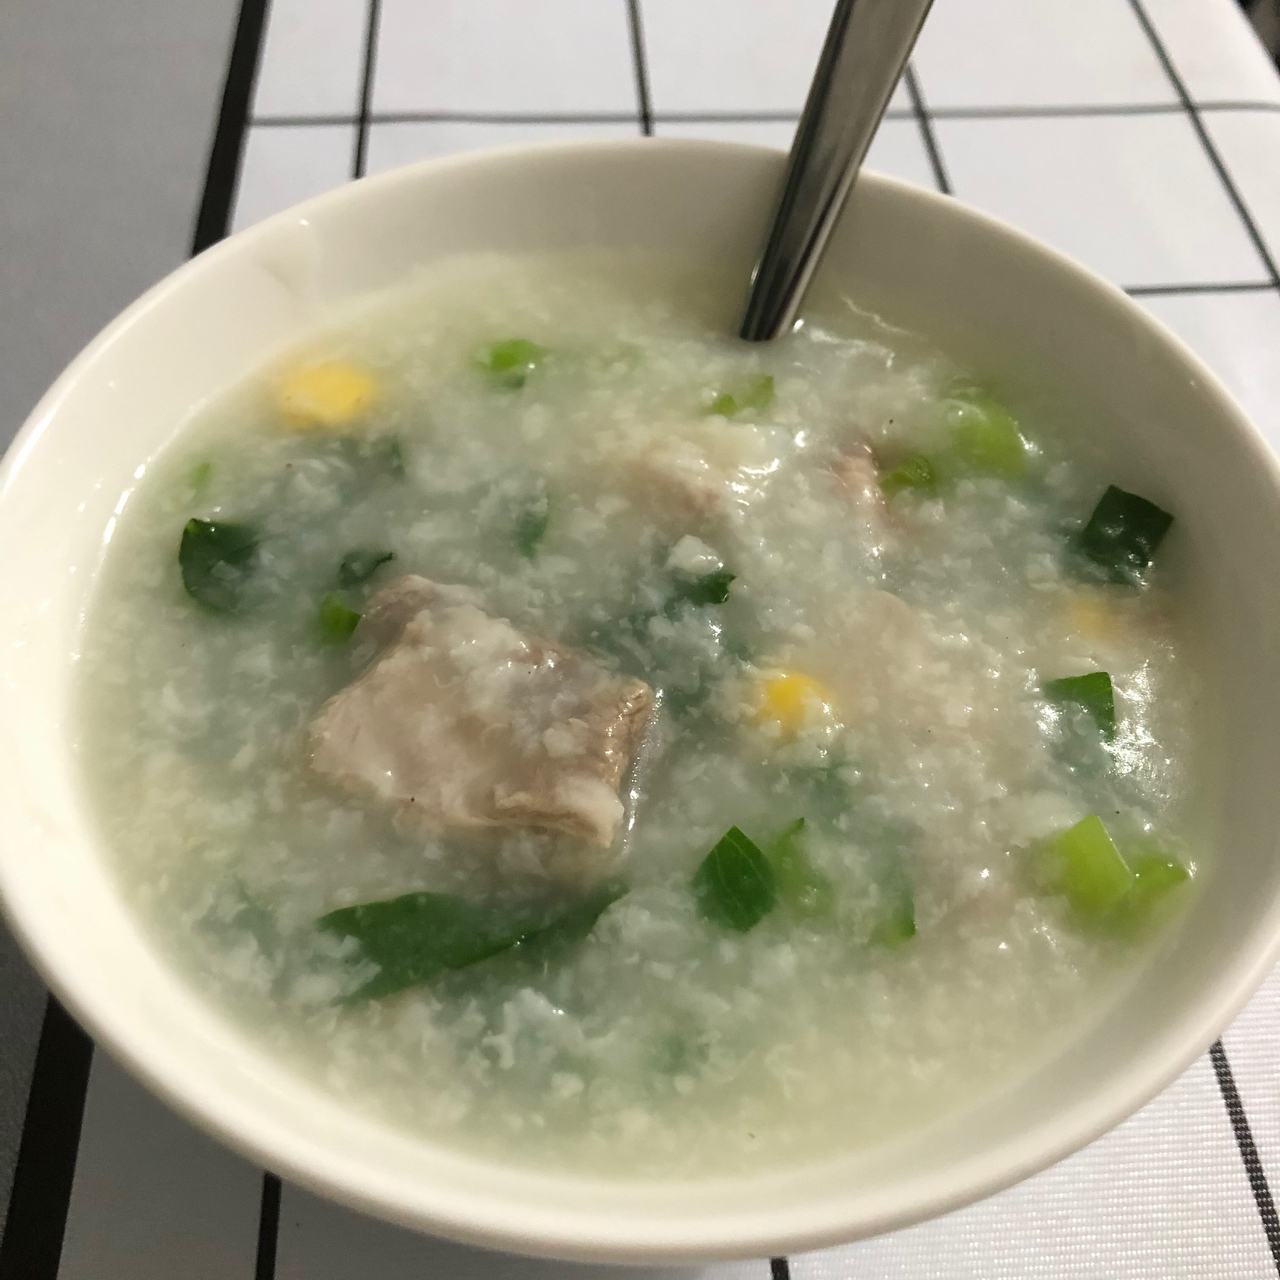 青菜排骨玉米粥(电饭煲简易版)